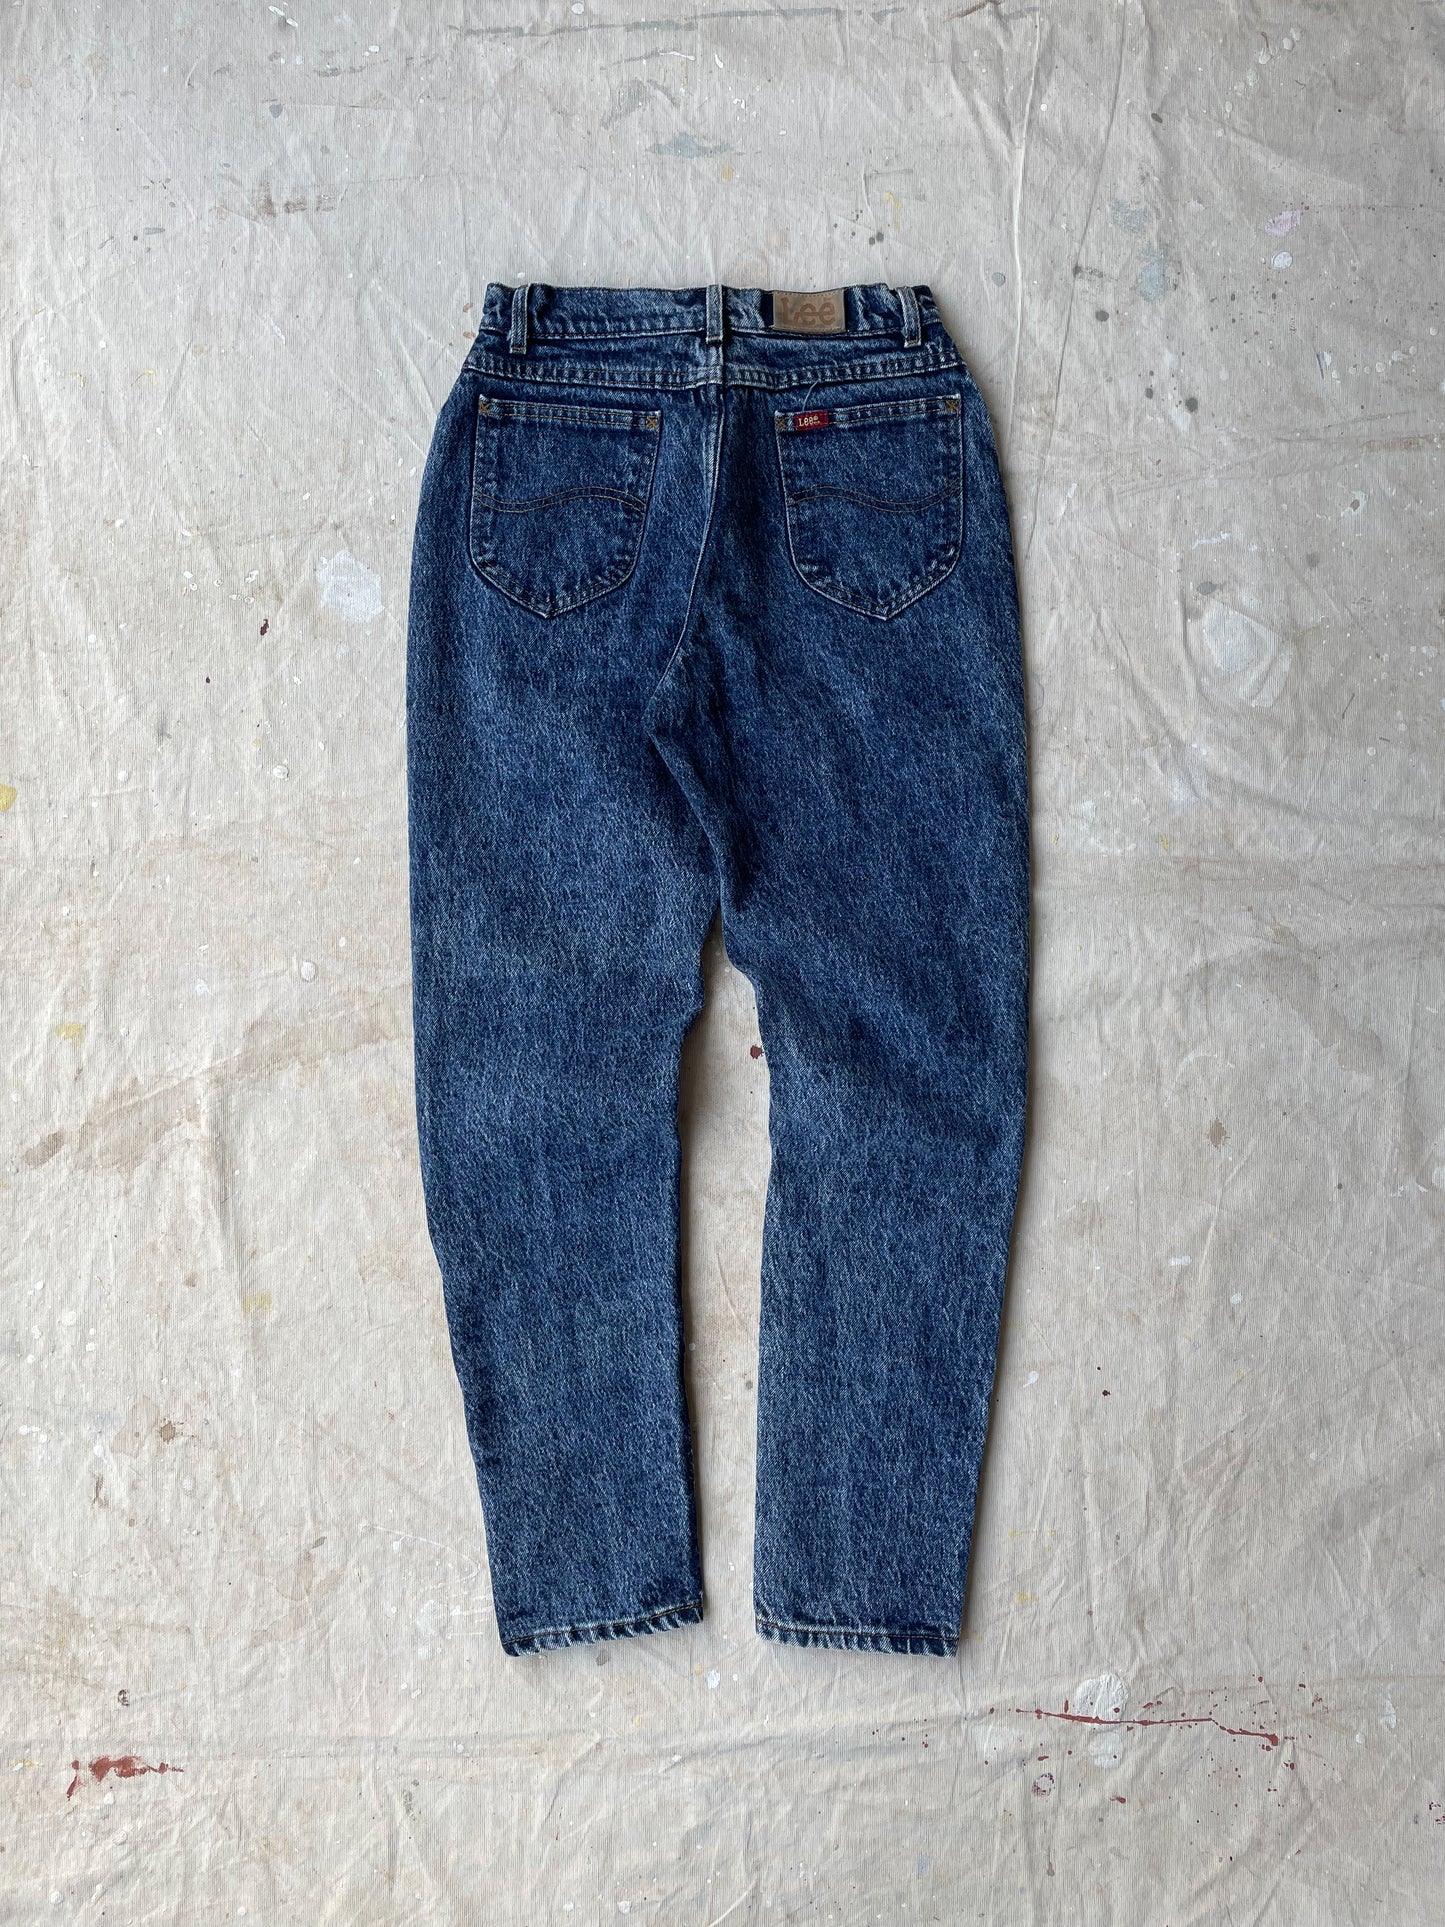 Lee Acid Washed Jeans—26x29]